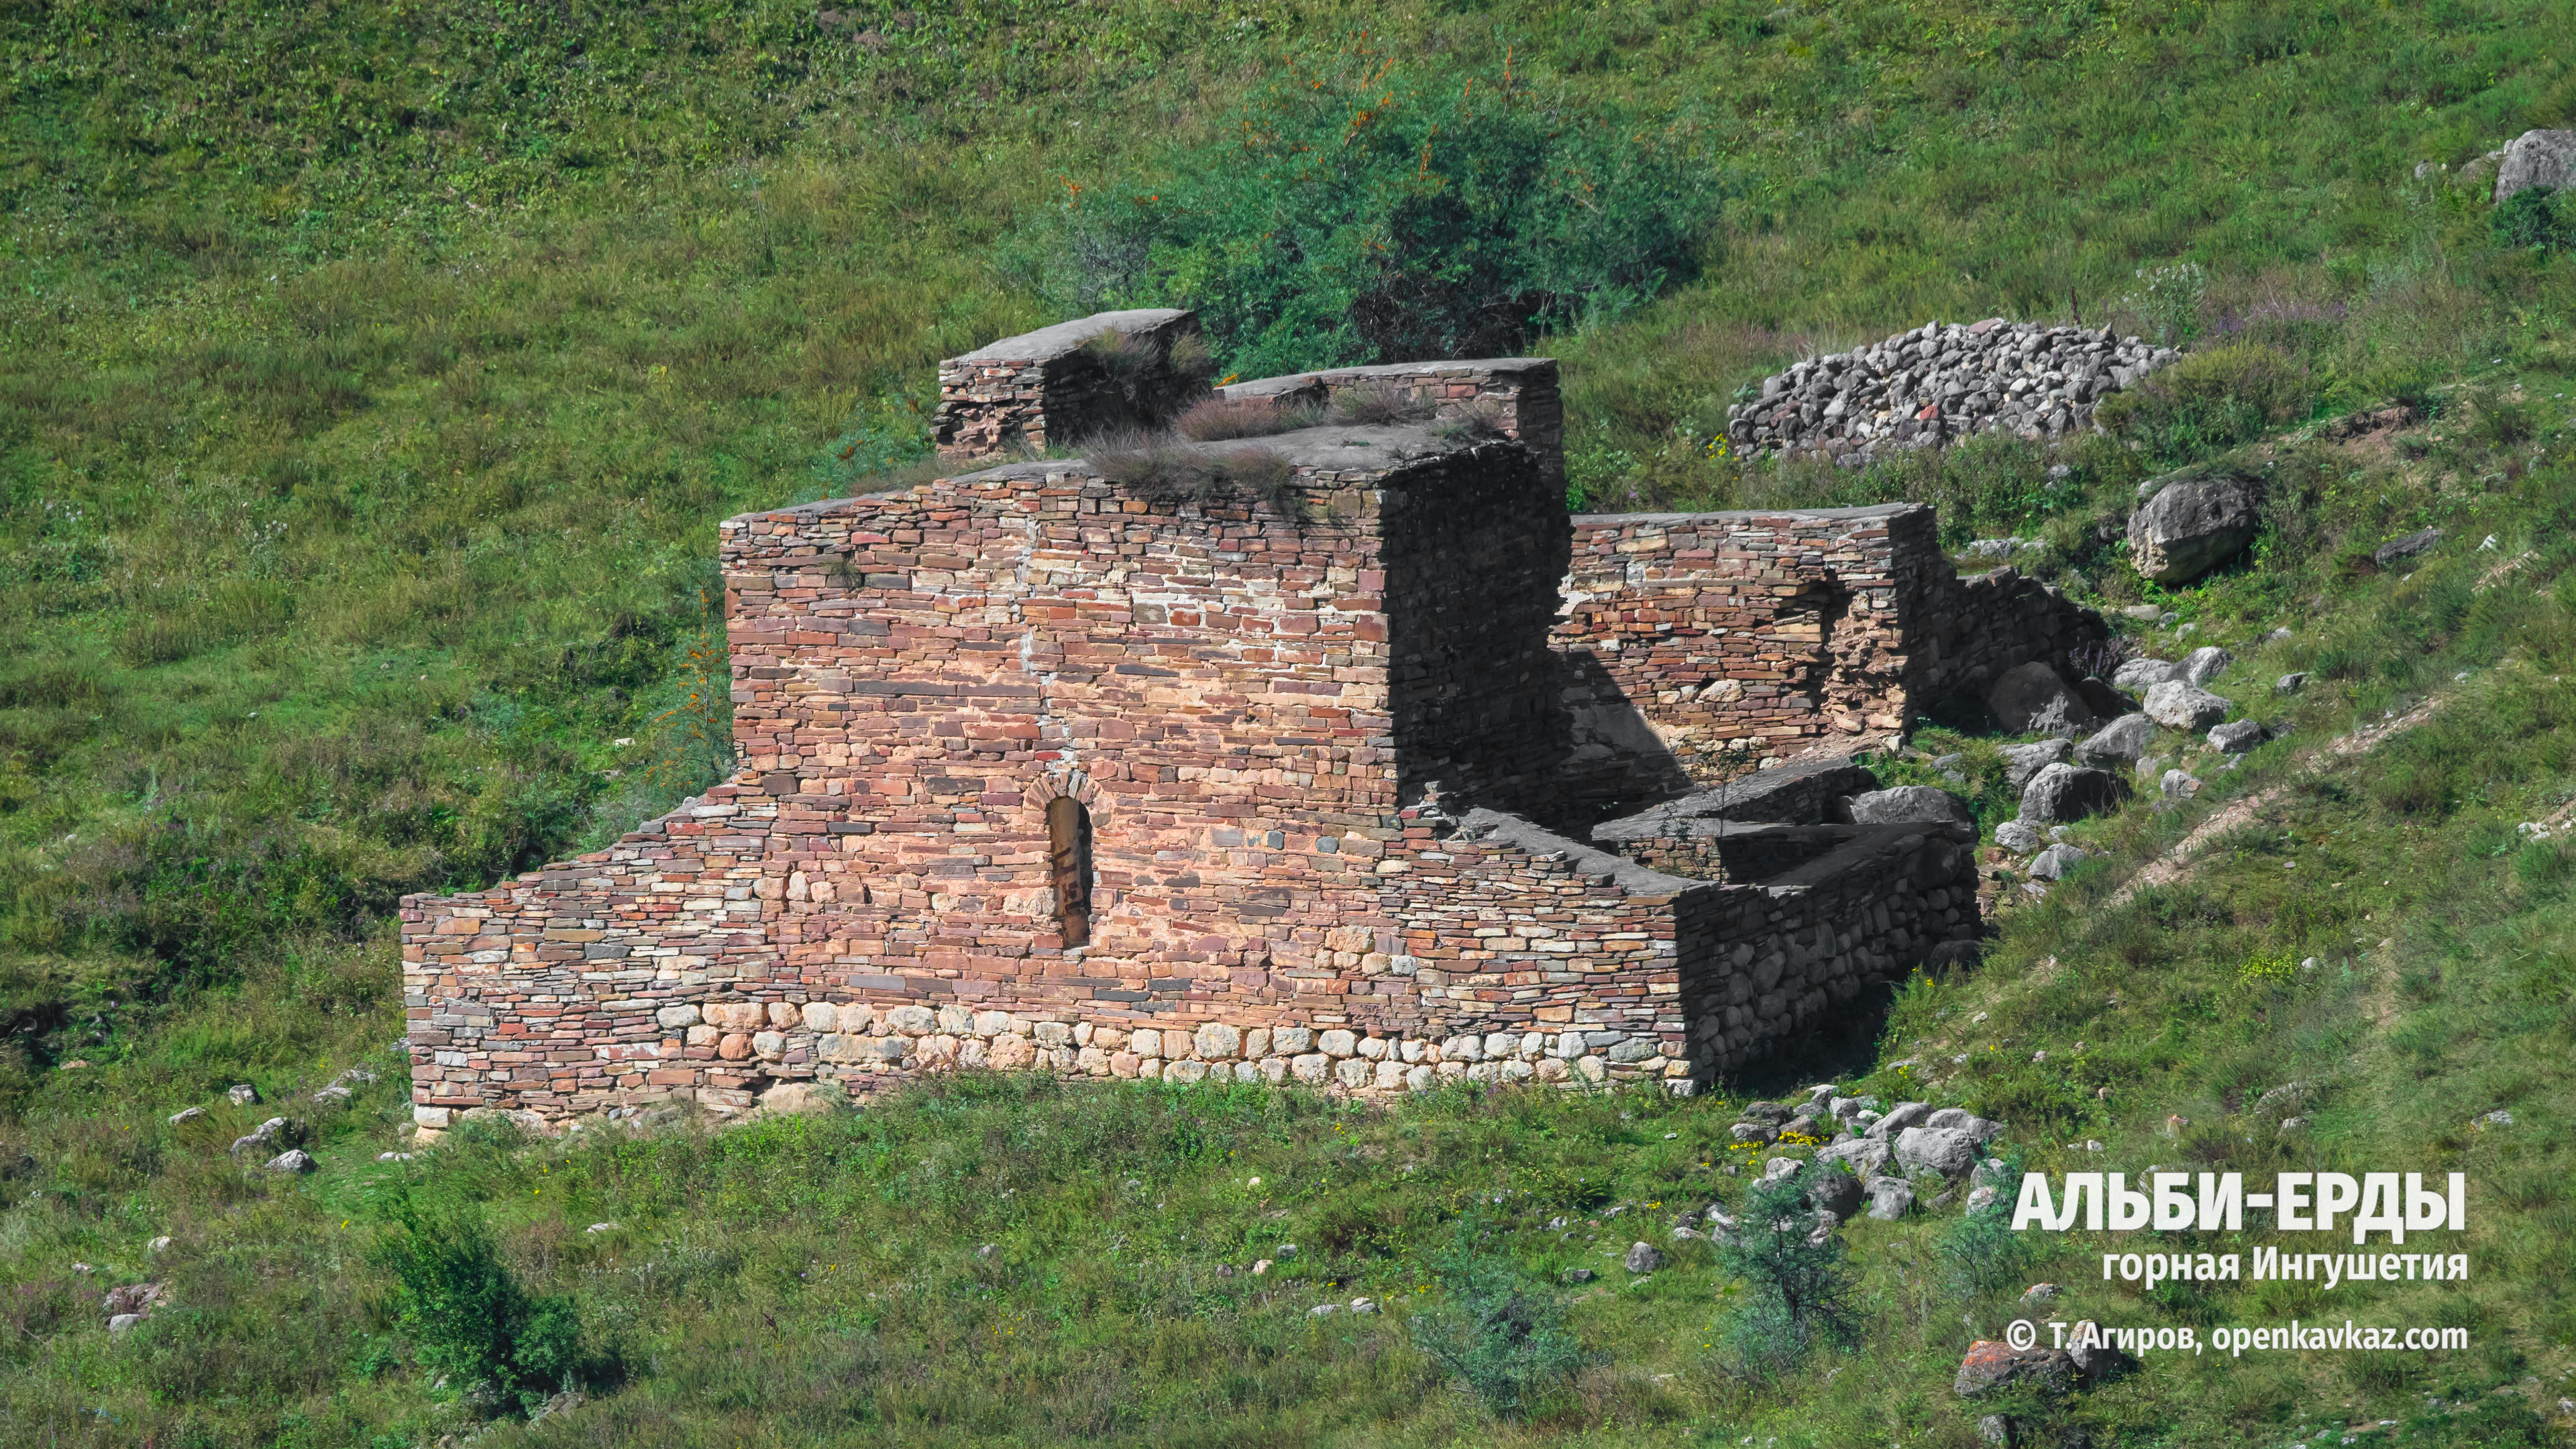 Храм Альби-Ерды, Ингушетия